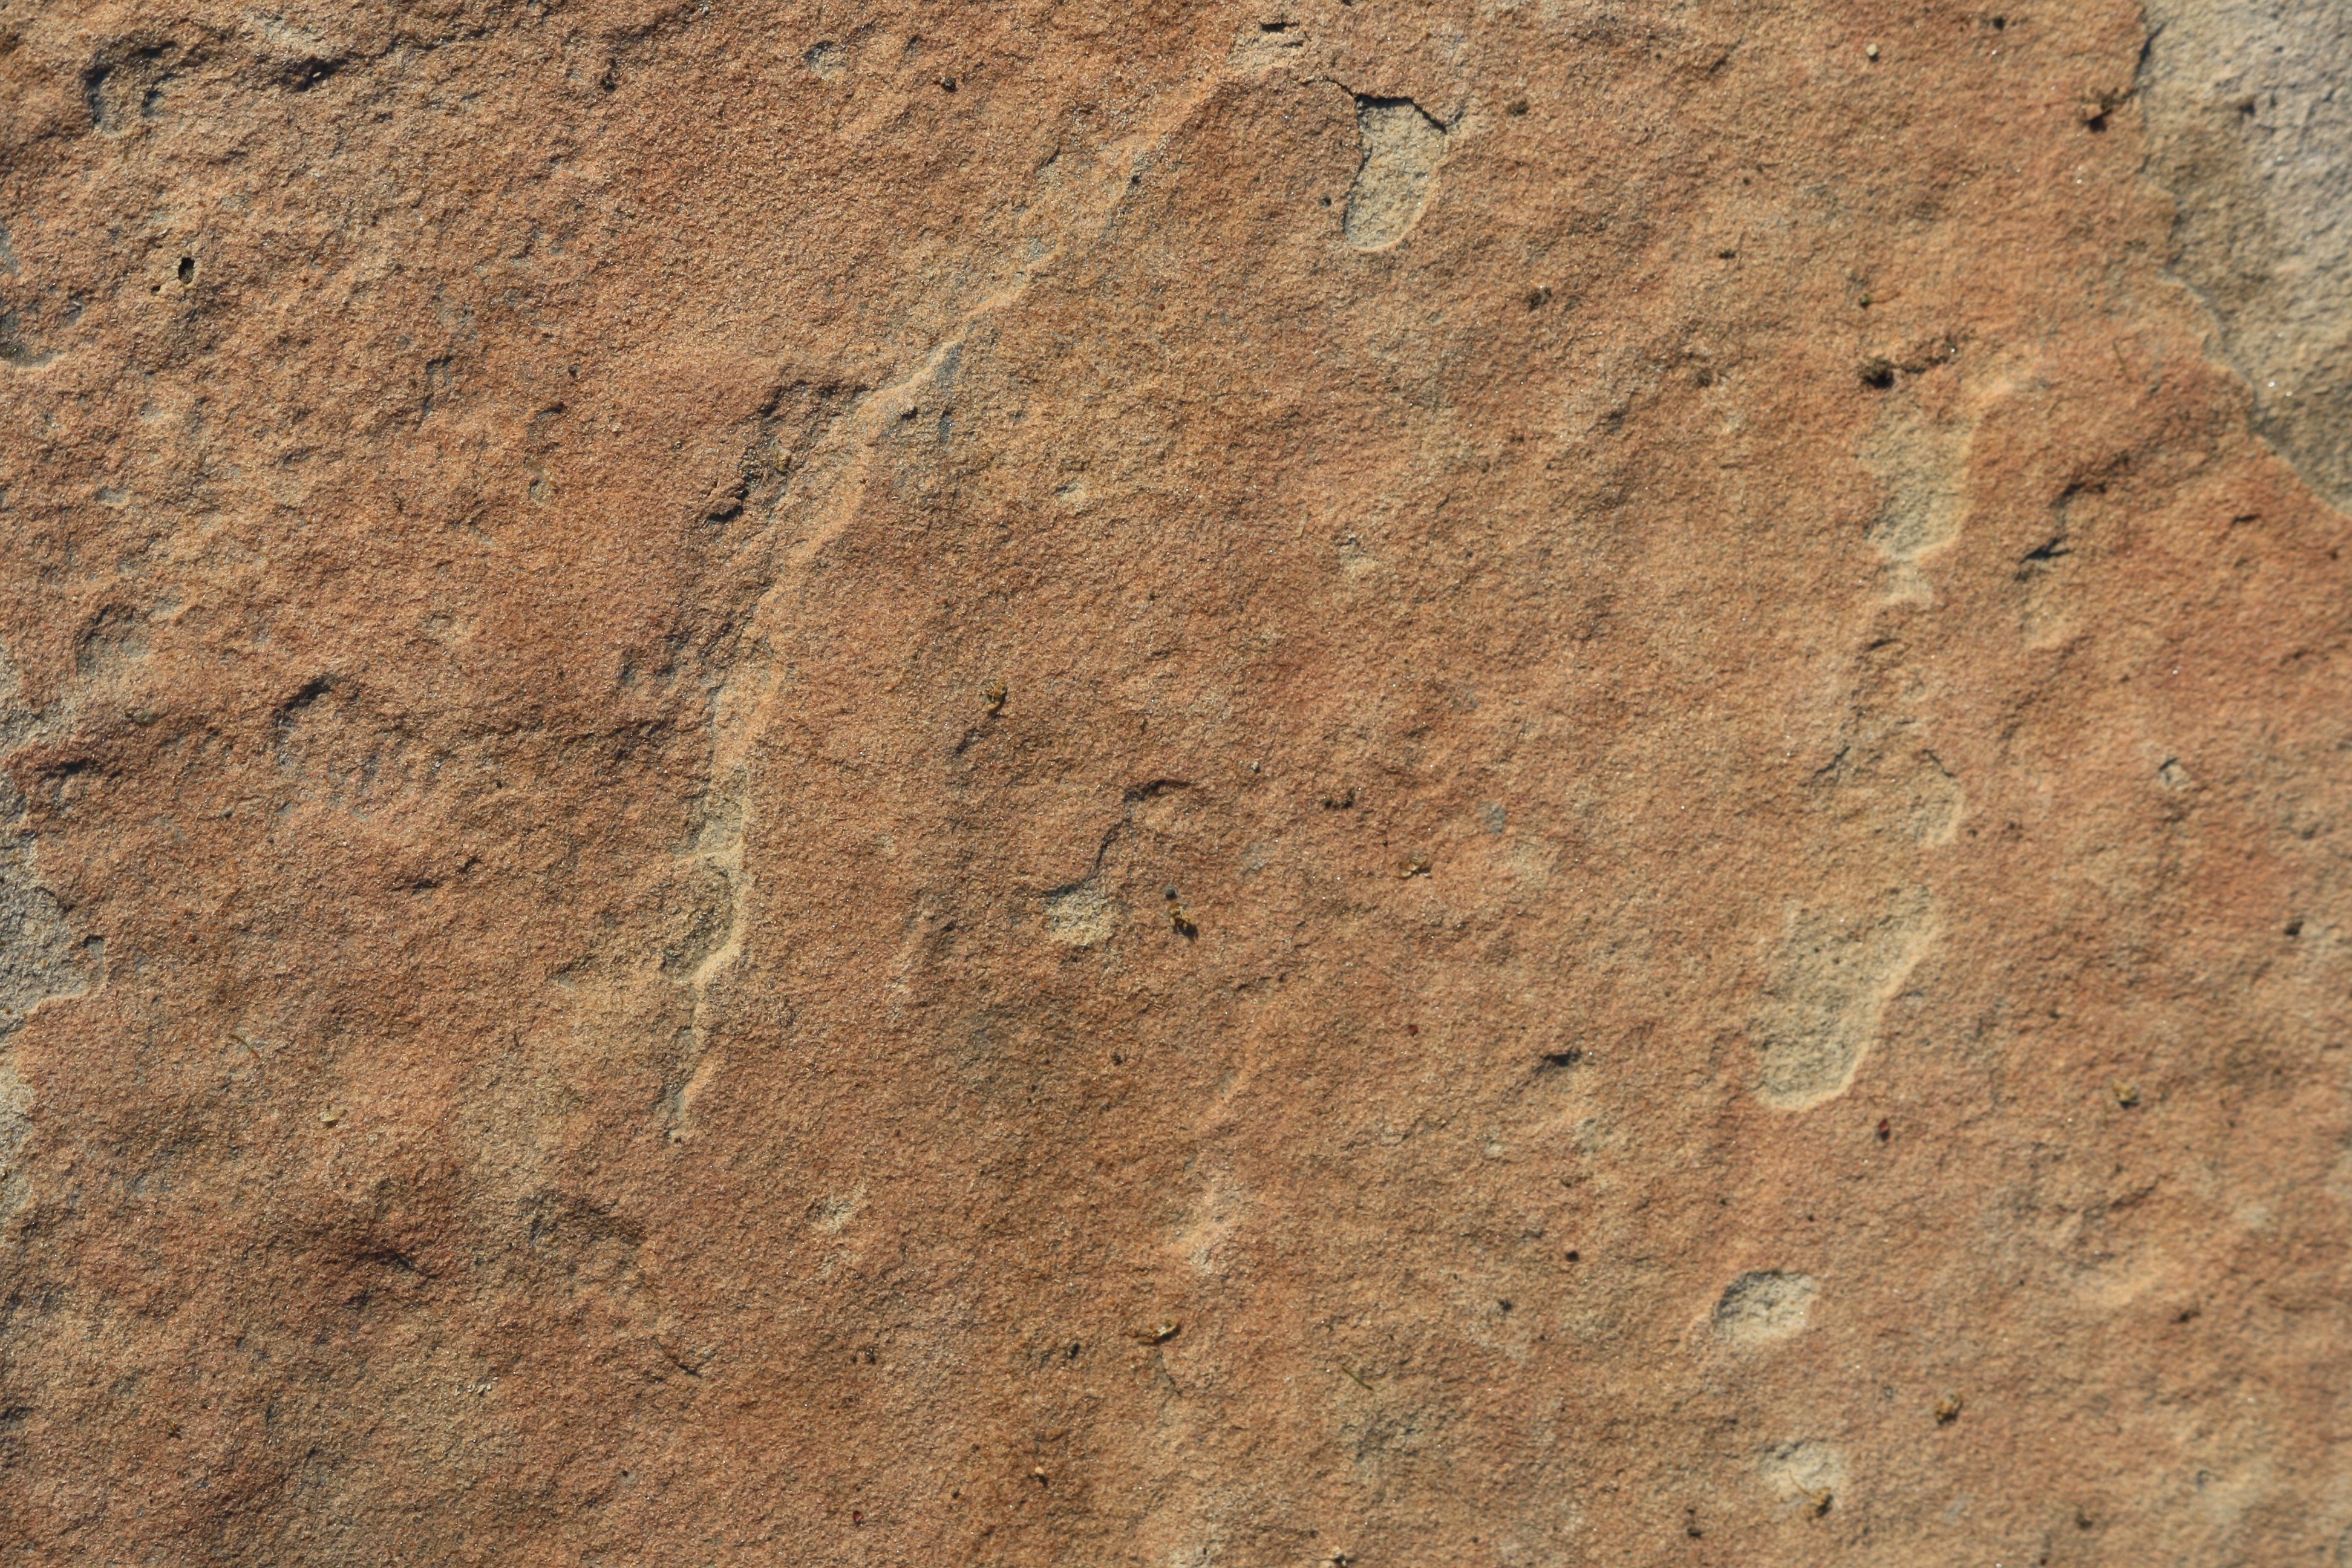 Sandstone Rock Texture Picture. Free Photograph. Photo Public Domain